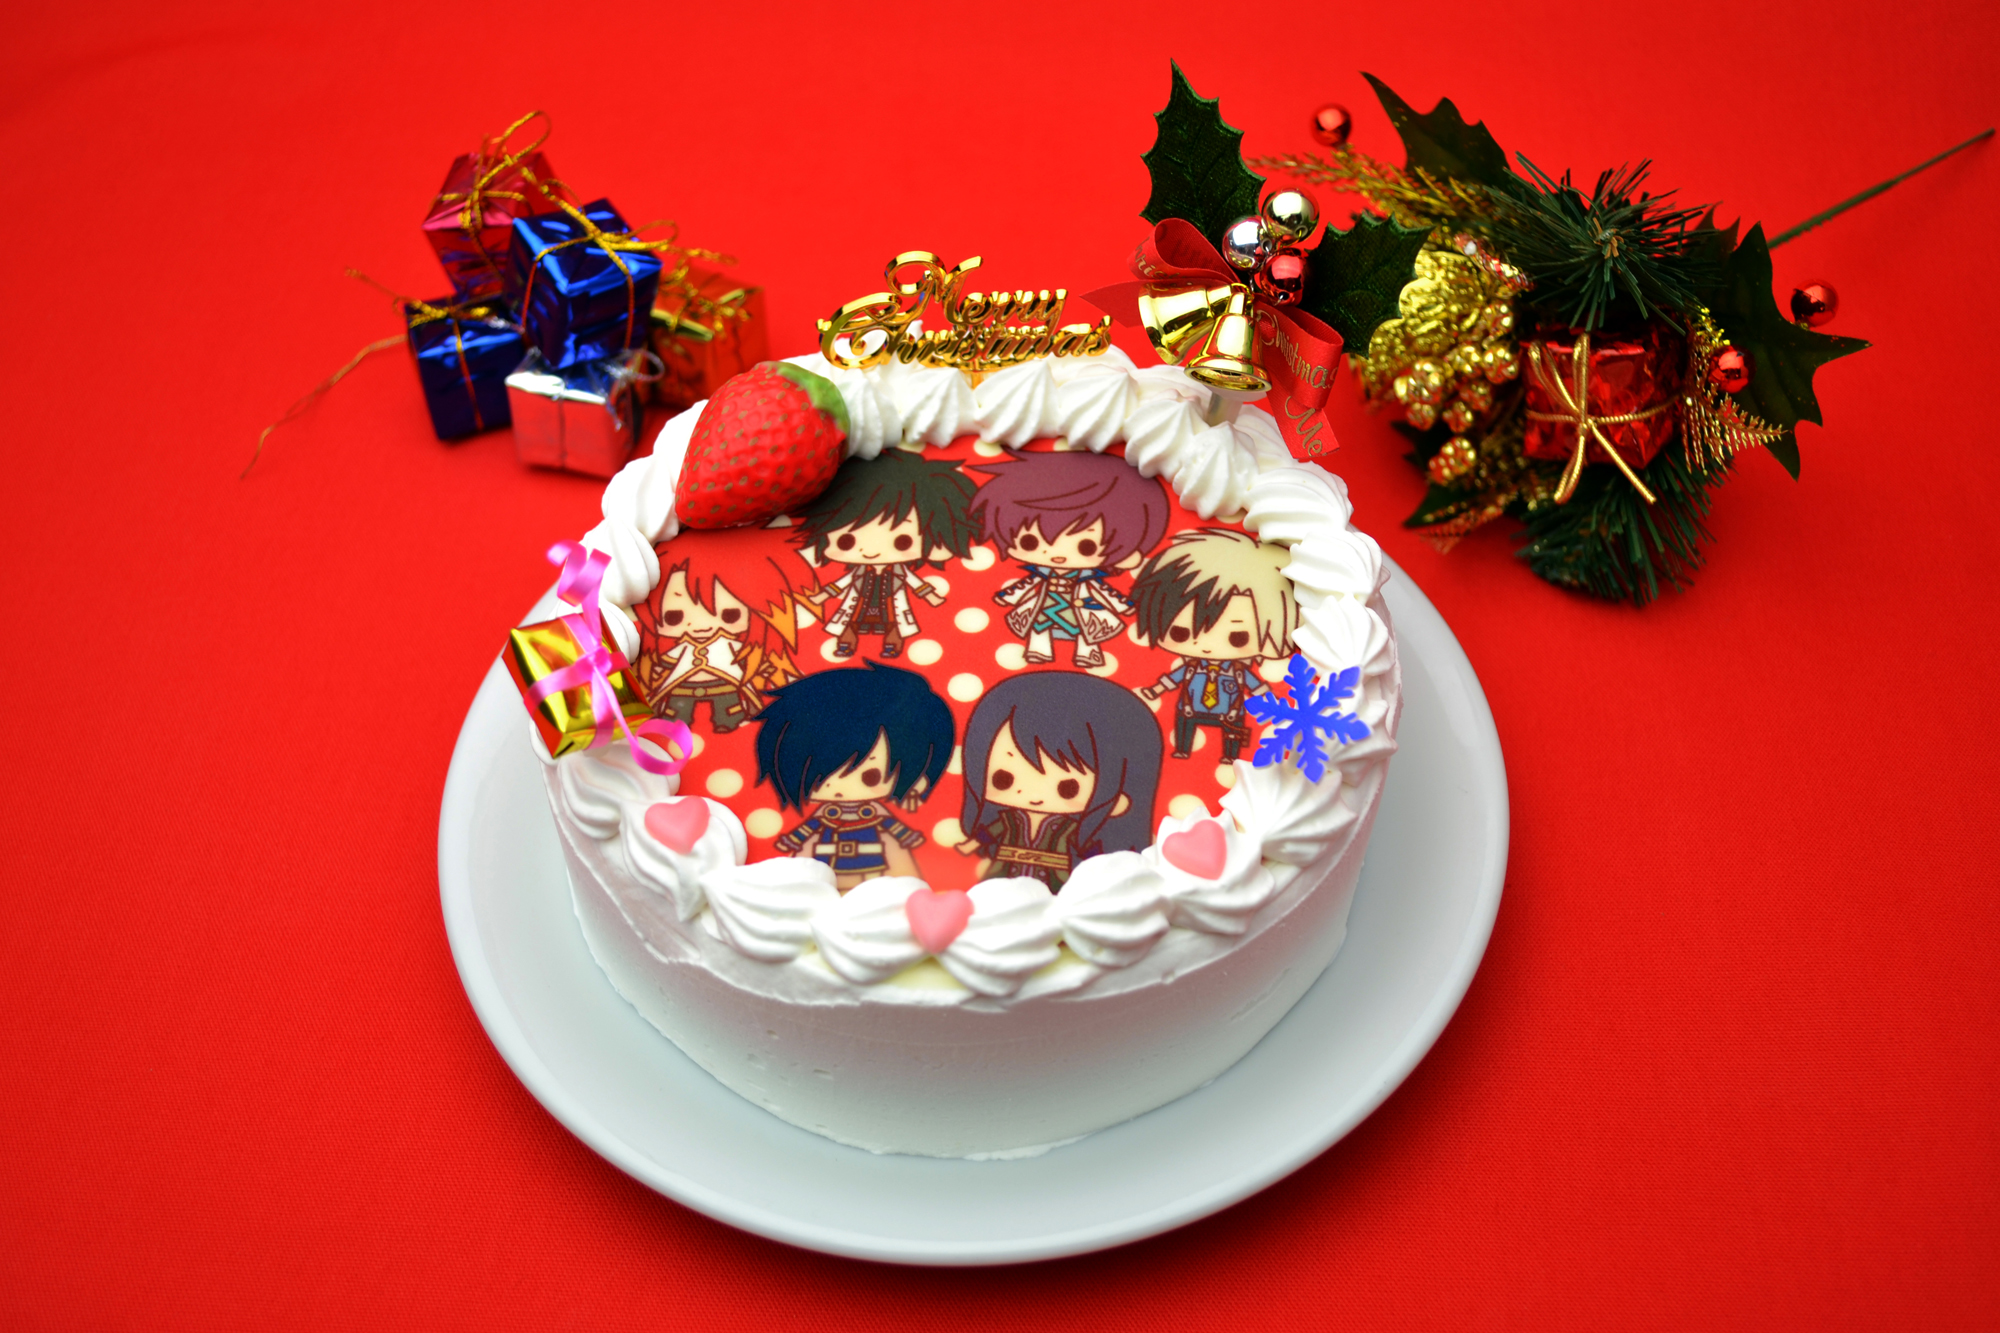 『テイルズ オブ』シリーズのキュートなキャラクター達とクリスマスをお祝いしよう！ 「テイルズ オブ フレンズ 2014限定クリスマスケーキ」発売決定